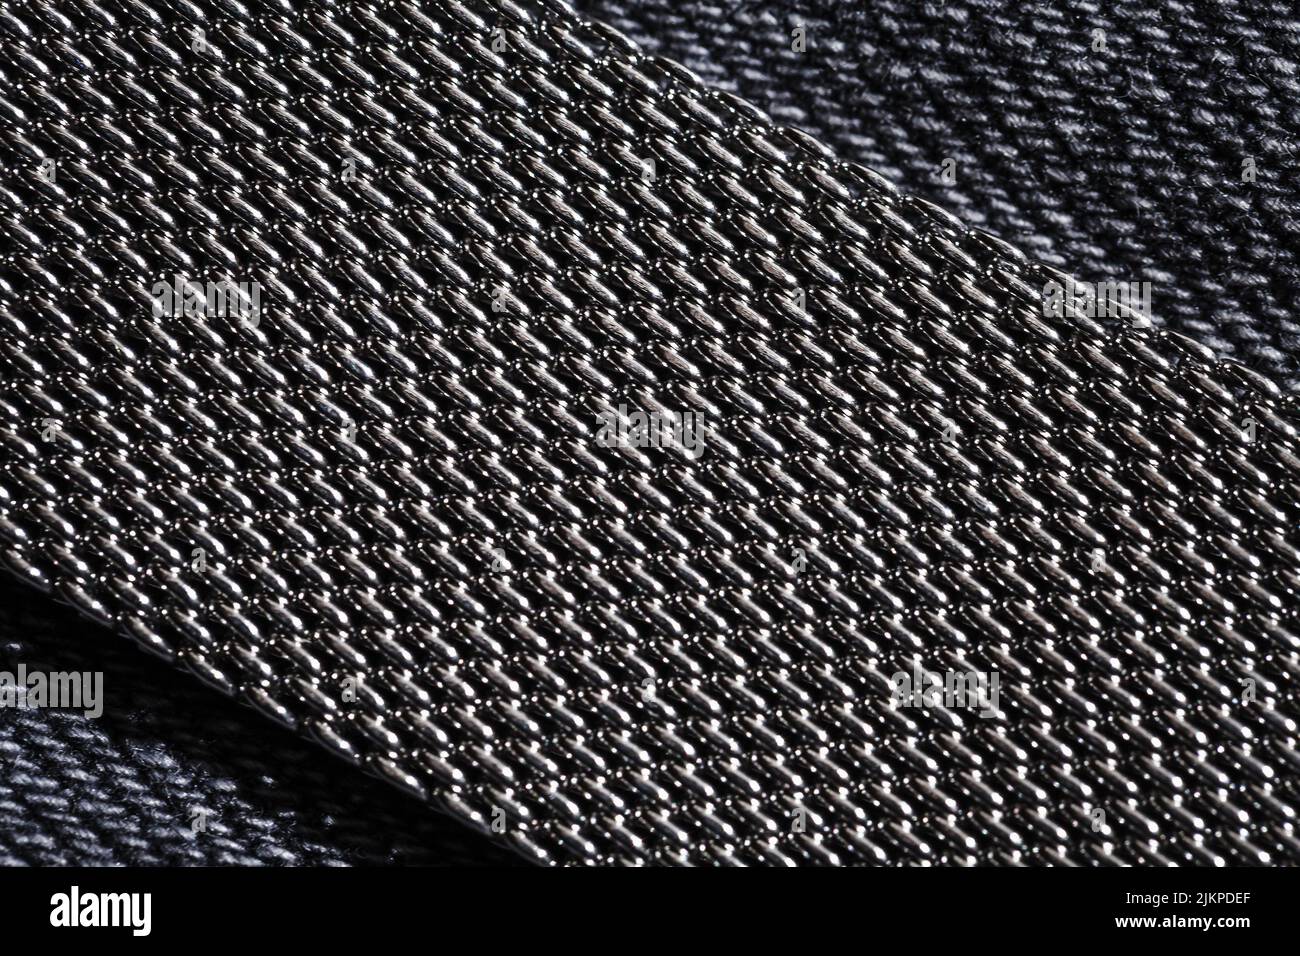 Tessitura milanese, bracciale orologio in acciaio inox, macro foto con messa a fuoco selettiva Foto Stock